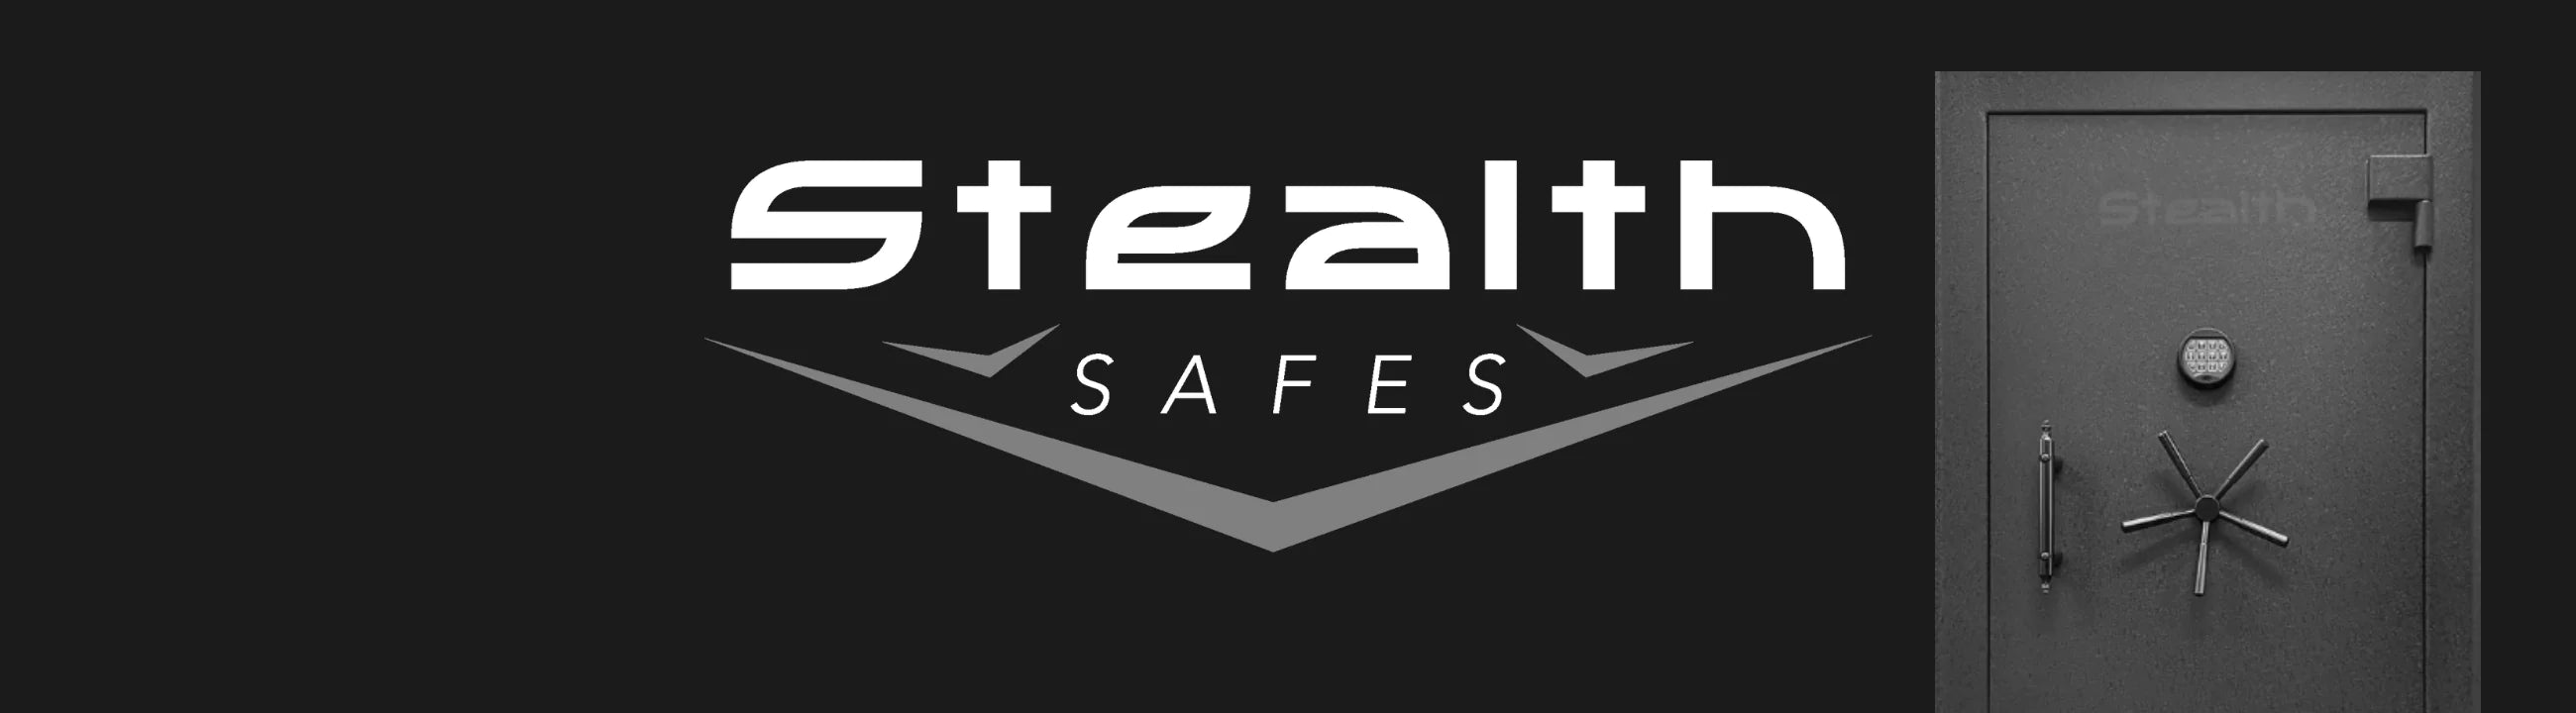 stealth safes